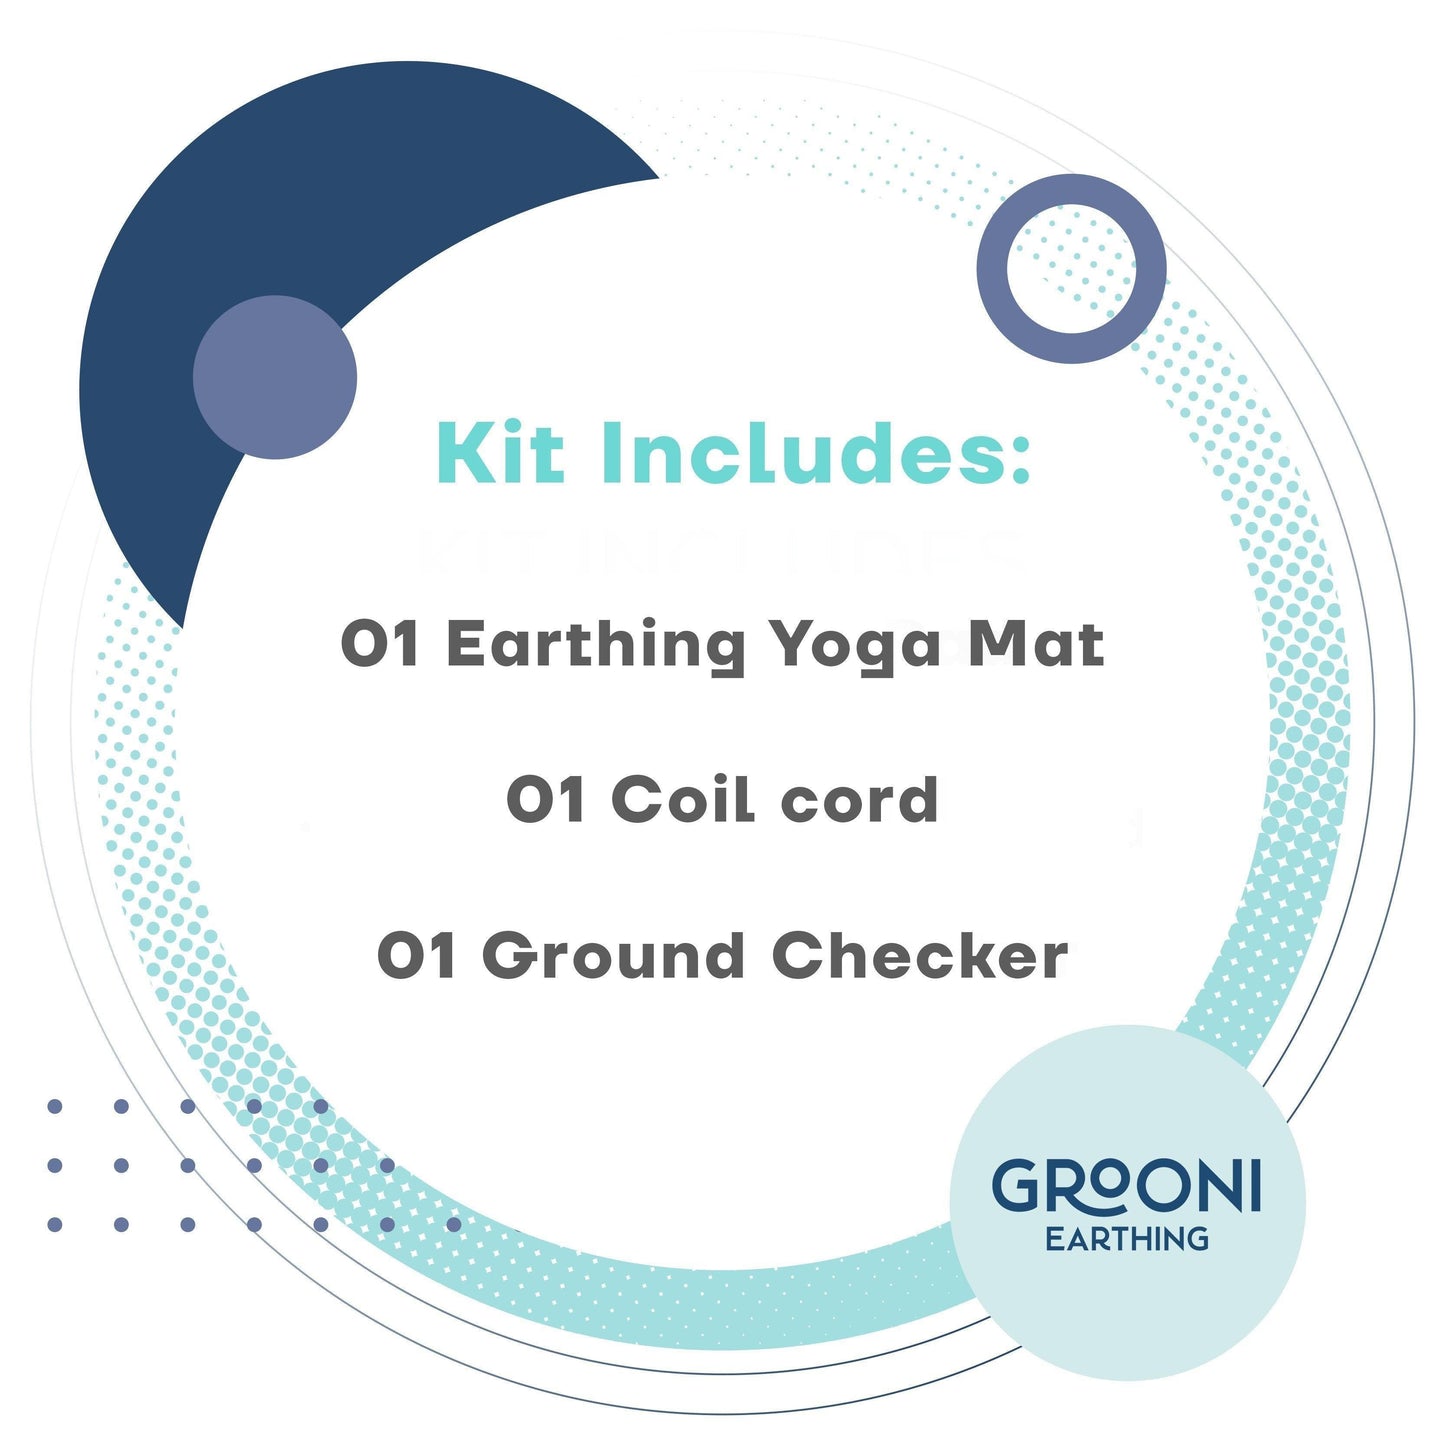 Earthing & Grounding Yoga Mat - Grooni Earthing